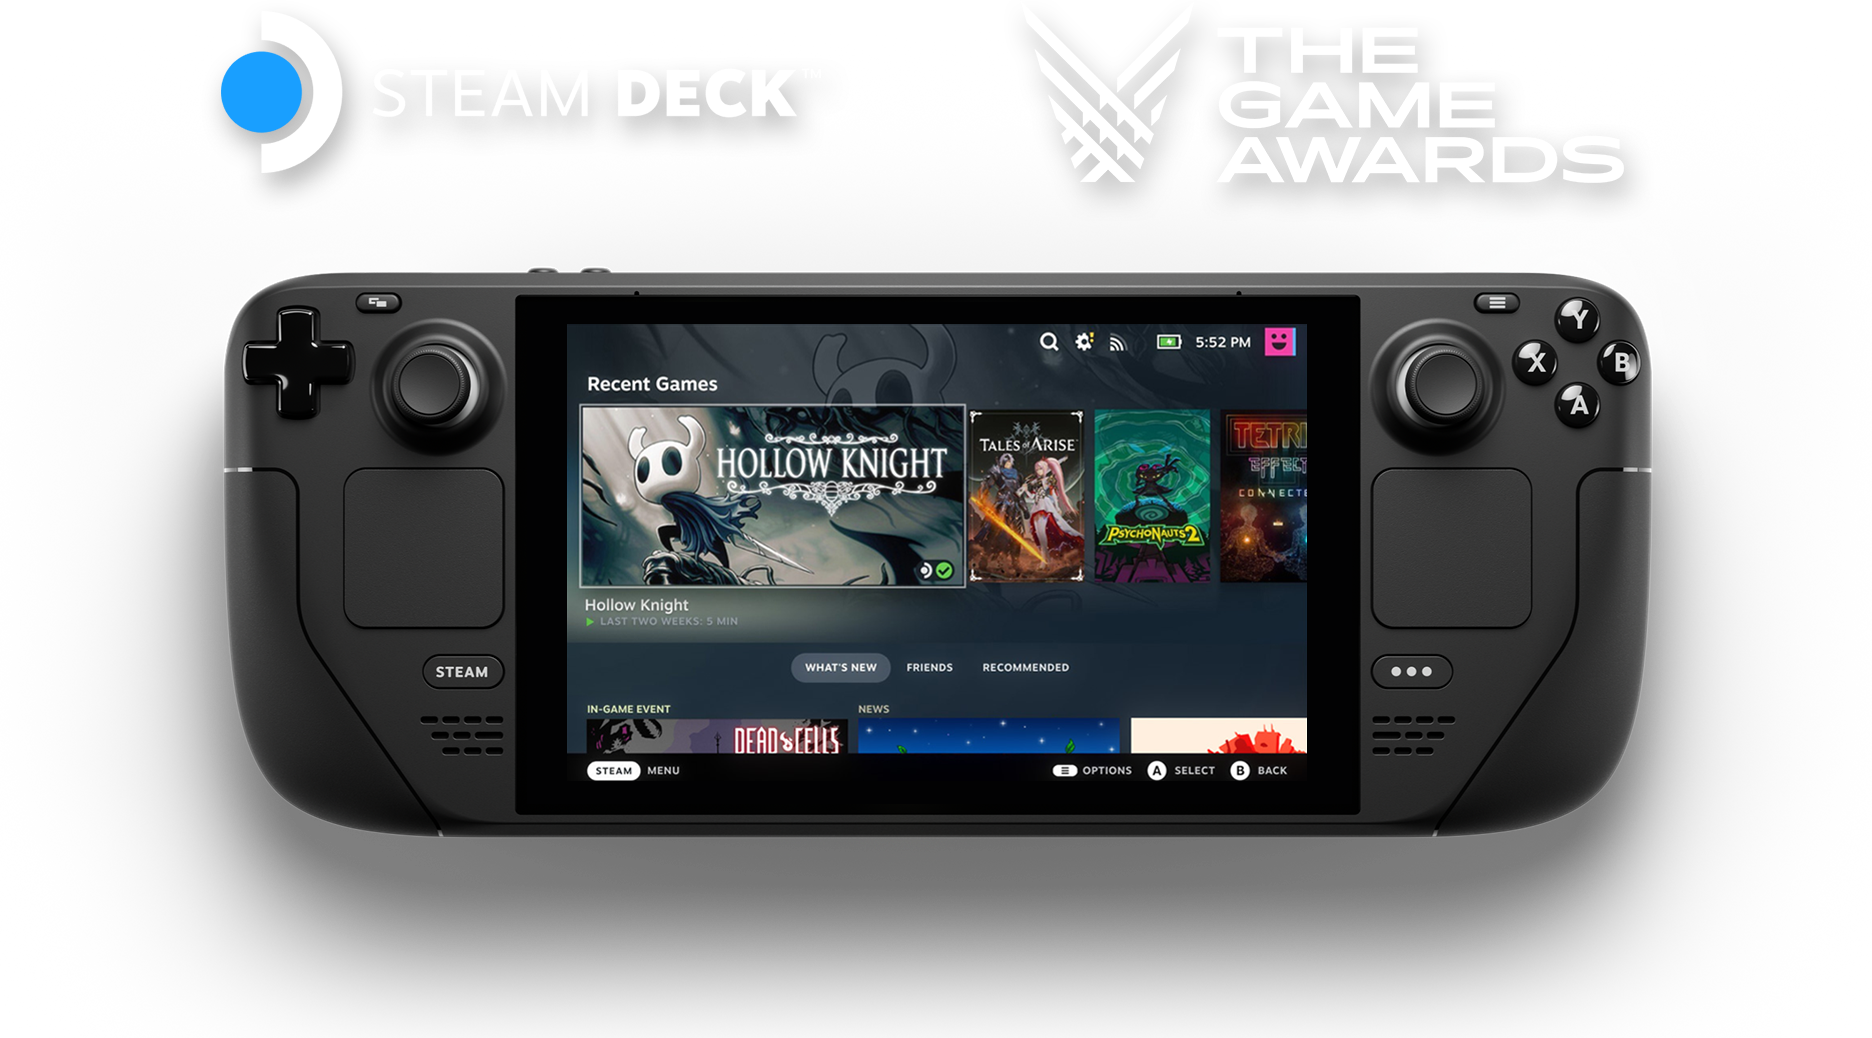 Valve 宣布将于本届 TGA 游戏大奖颁奖典礼上每分钟送出一台 Steam Deck 主机 - 电脑王阿达